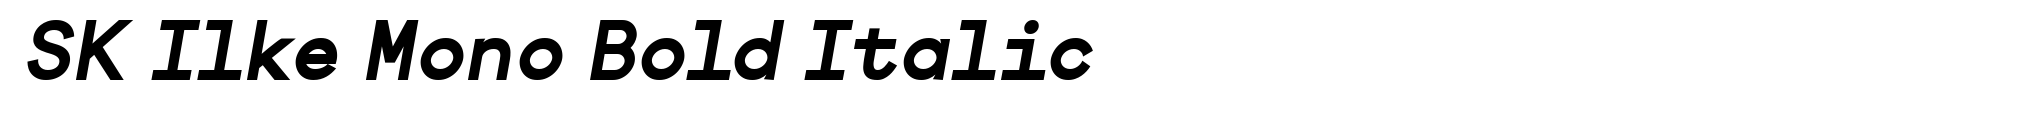 SK Ilke Mono Bold Italic image